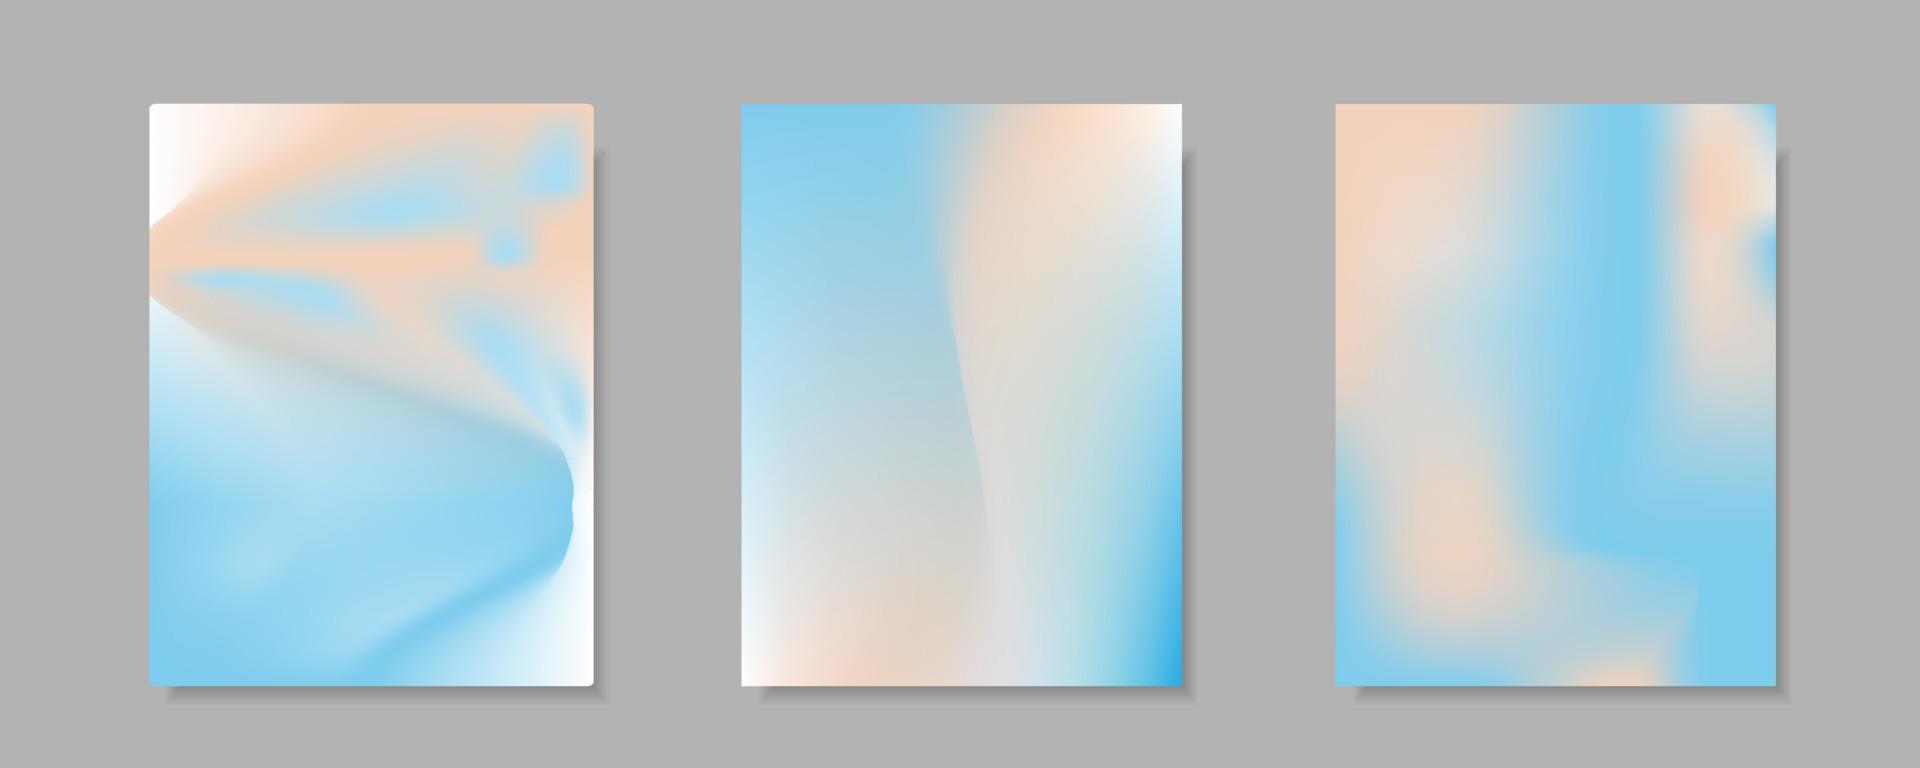 eine sammlung von abstrakten blau-orangeen verlaufsvektor-cover-hintergründen. für Geschäftsbroschürenhintergründe, Karten, Tapeten, Poster und Grafikdesigns. Illustrationsvorlage vektor